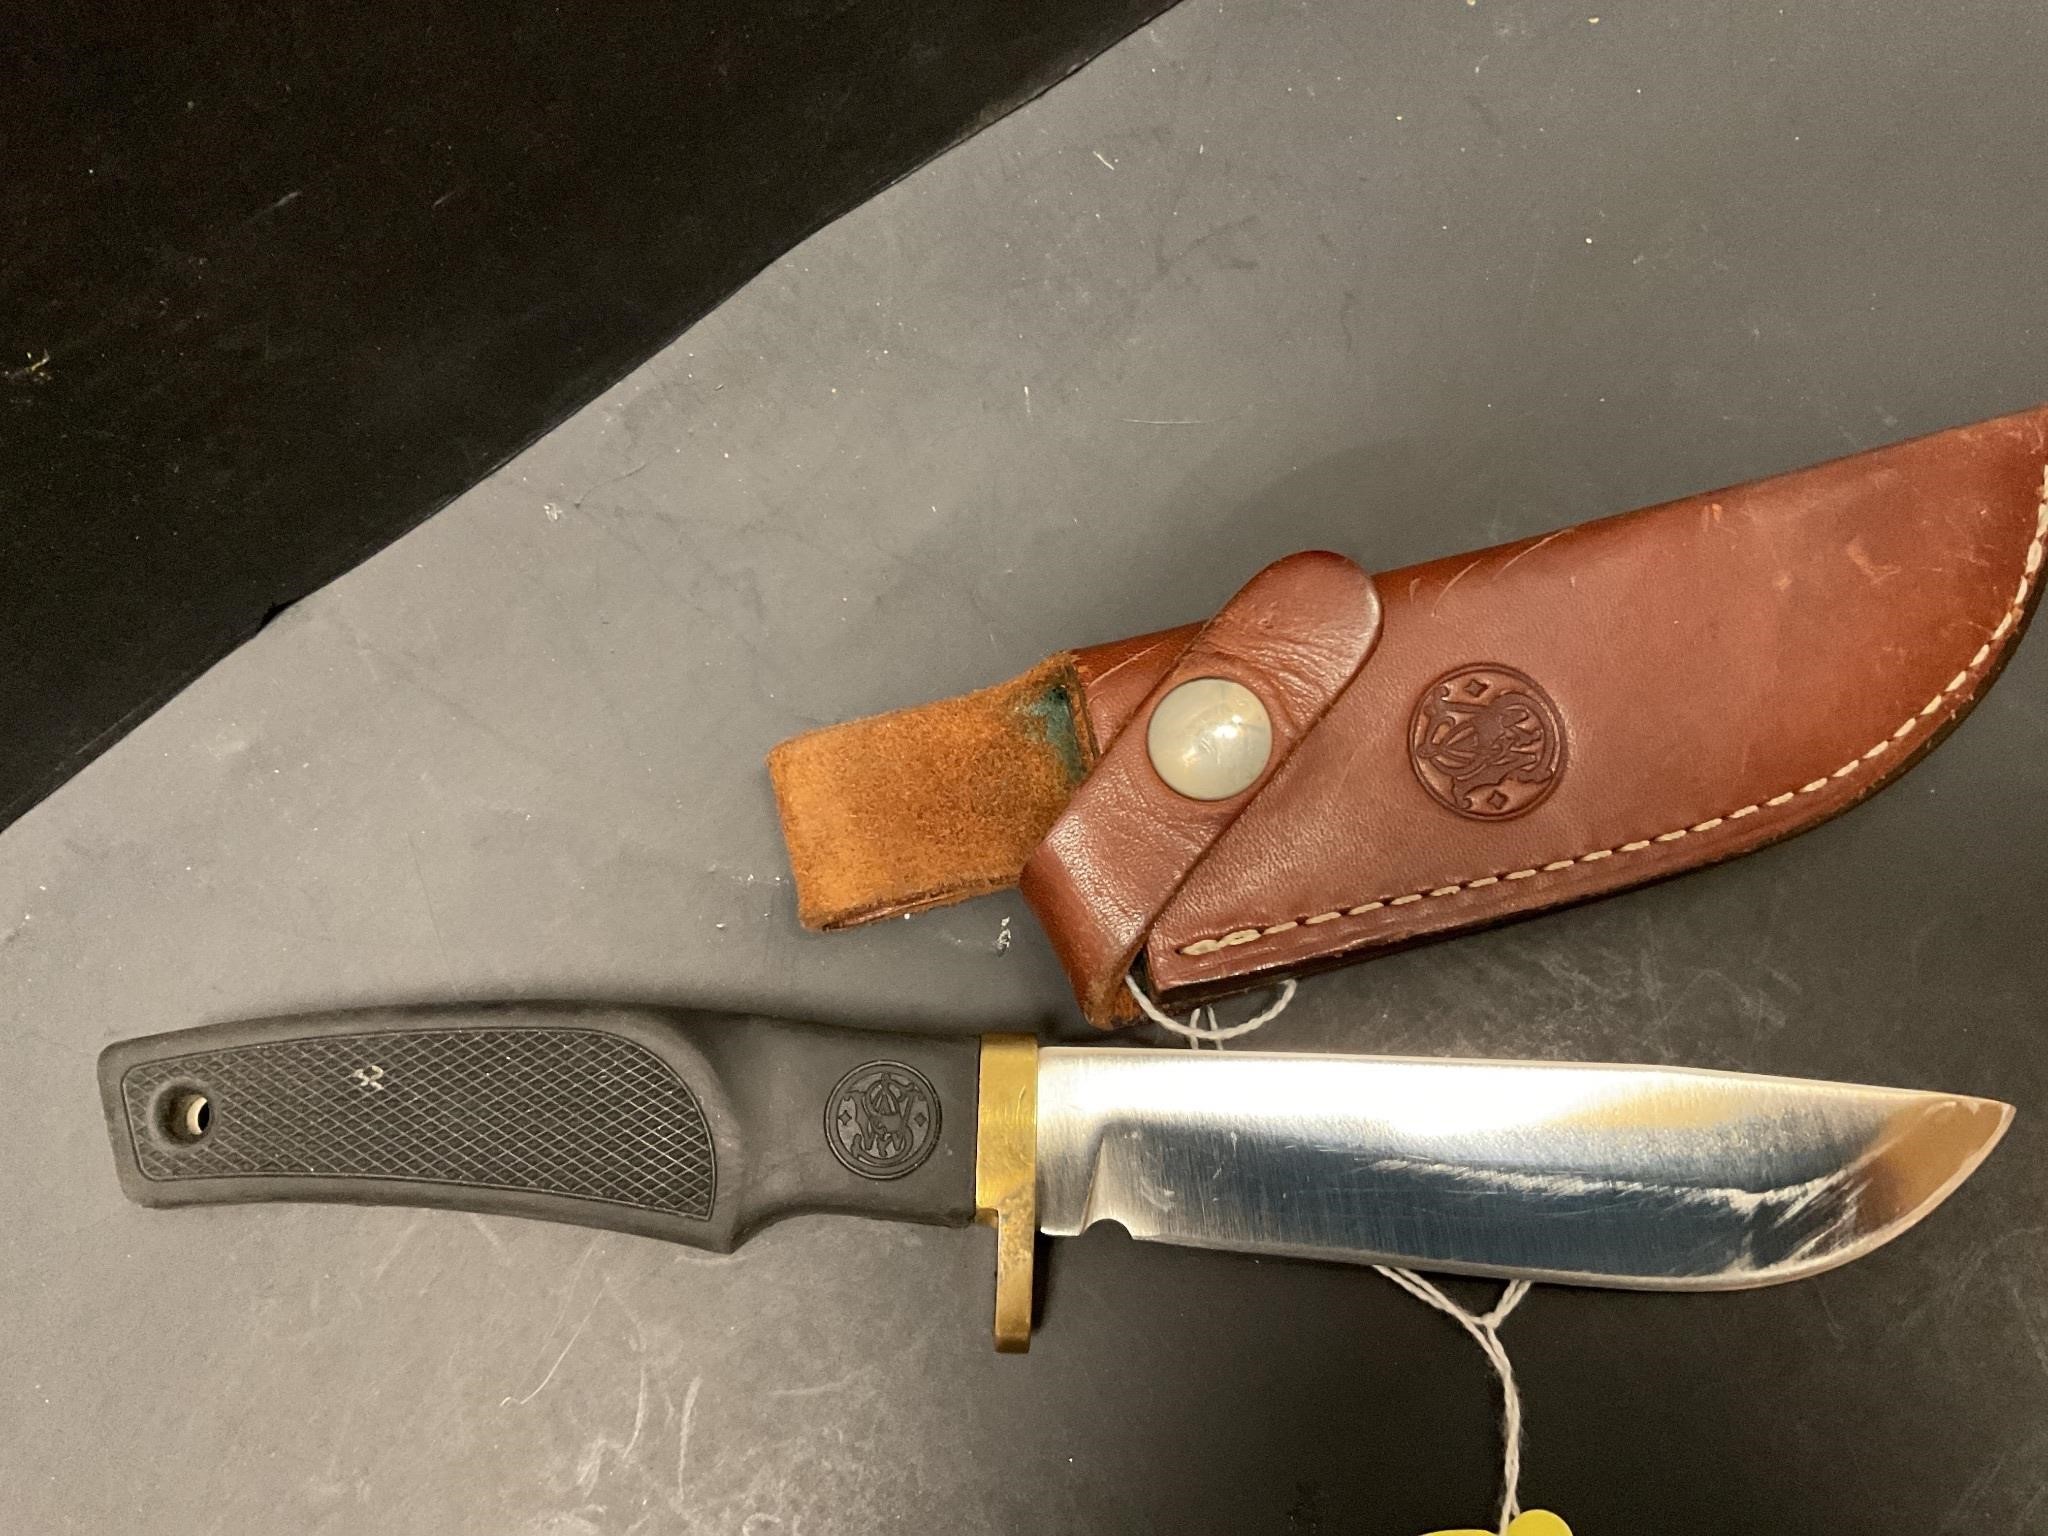 S&w knife with sheath